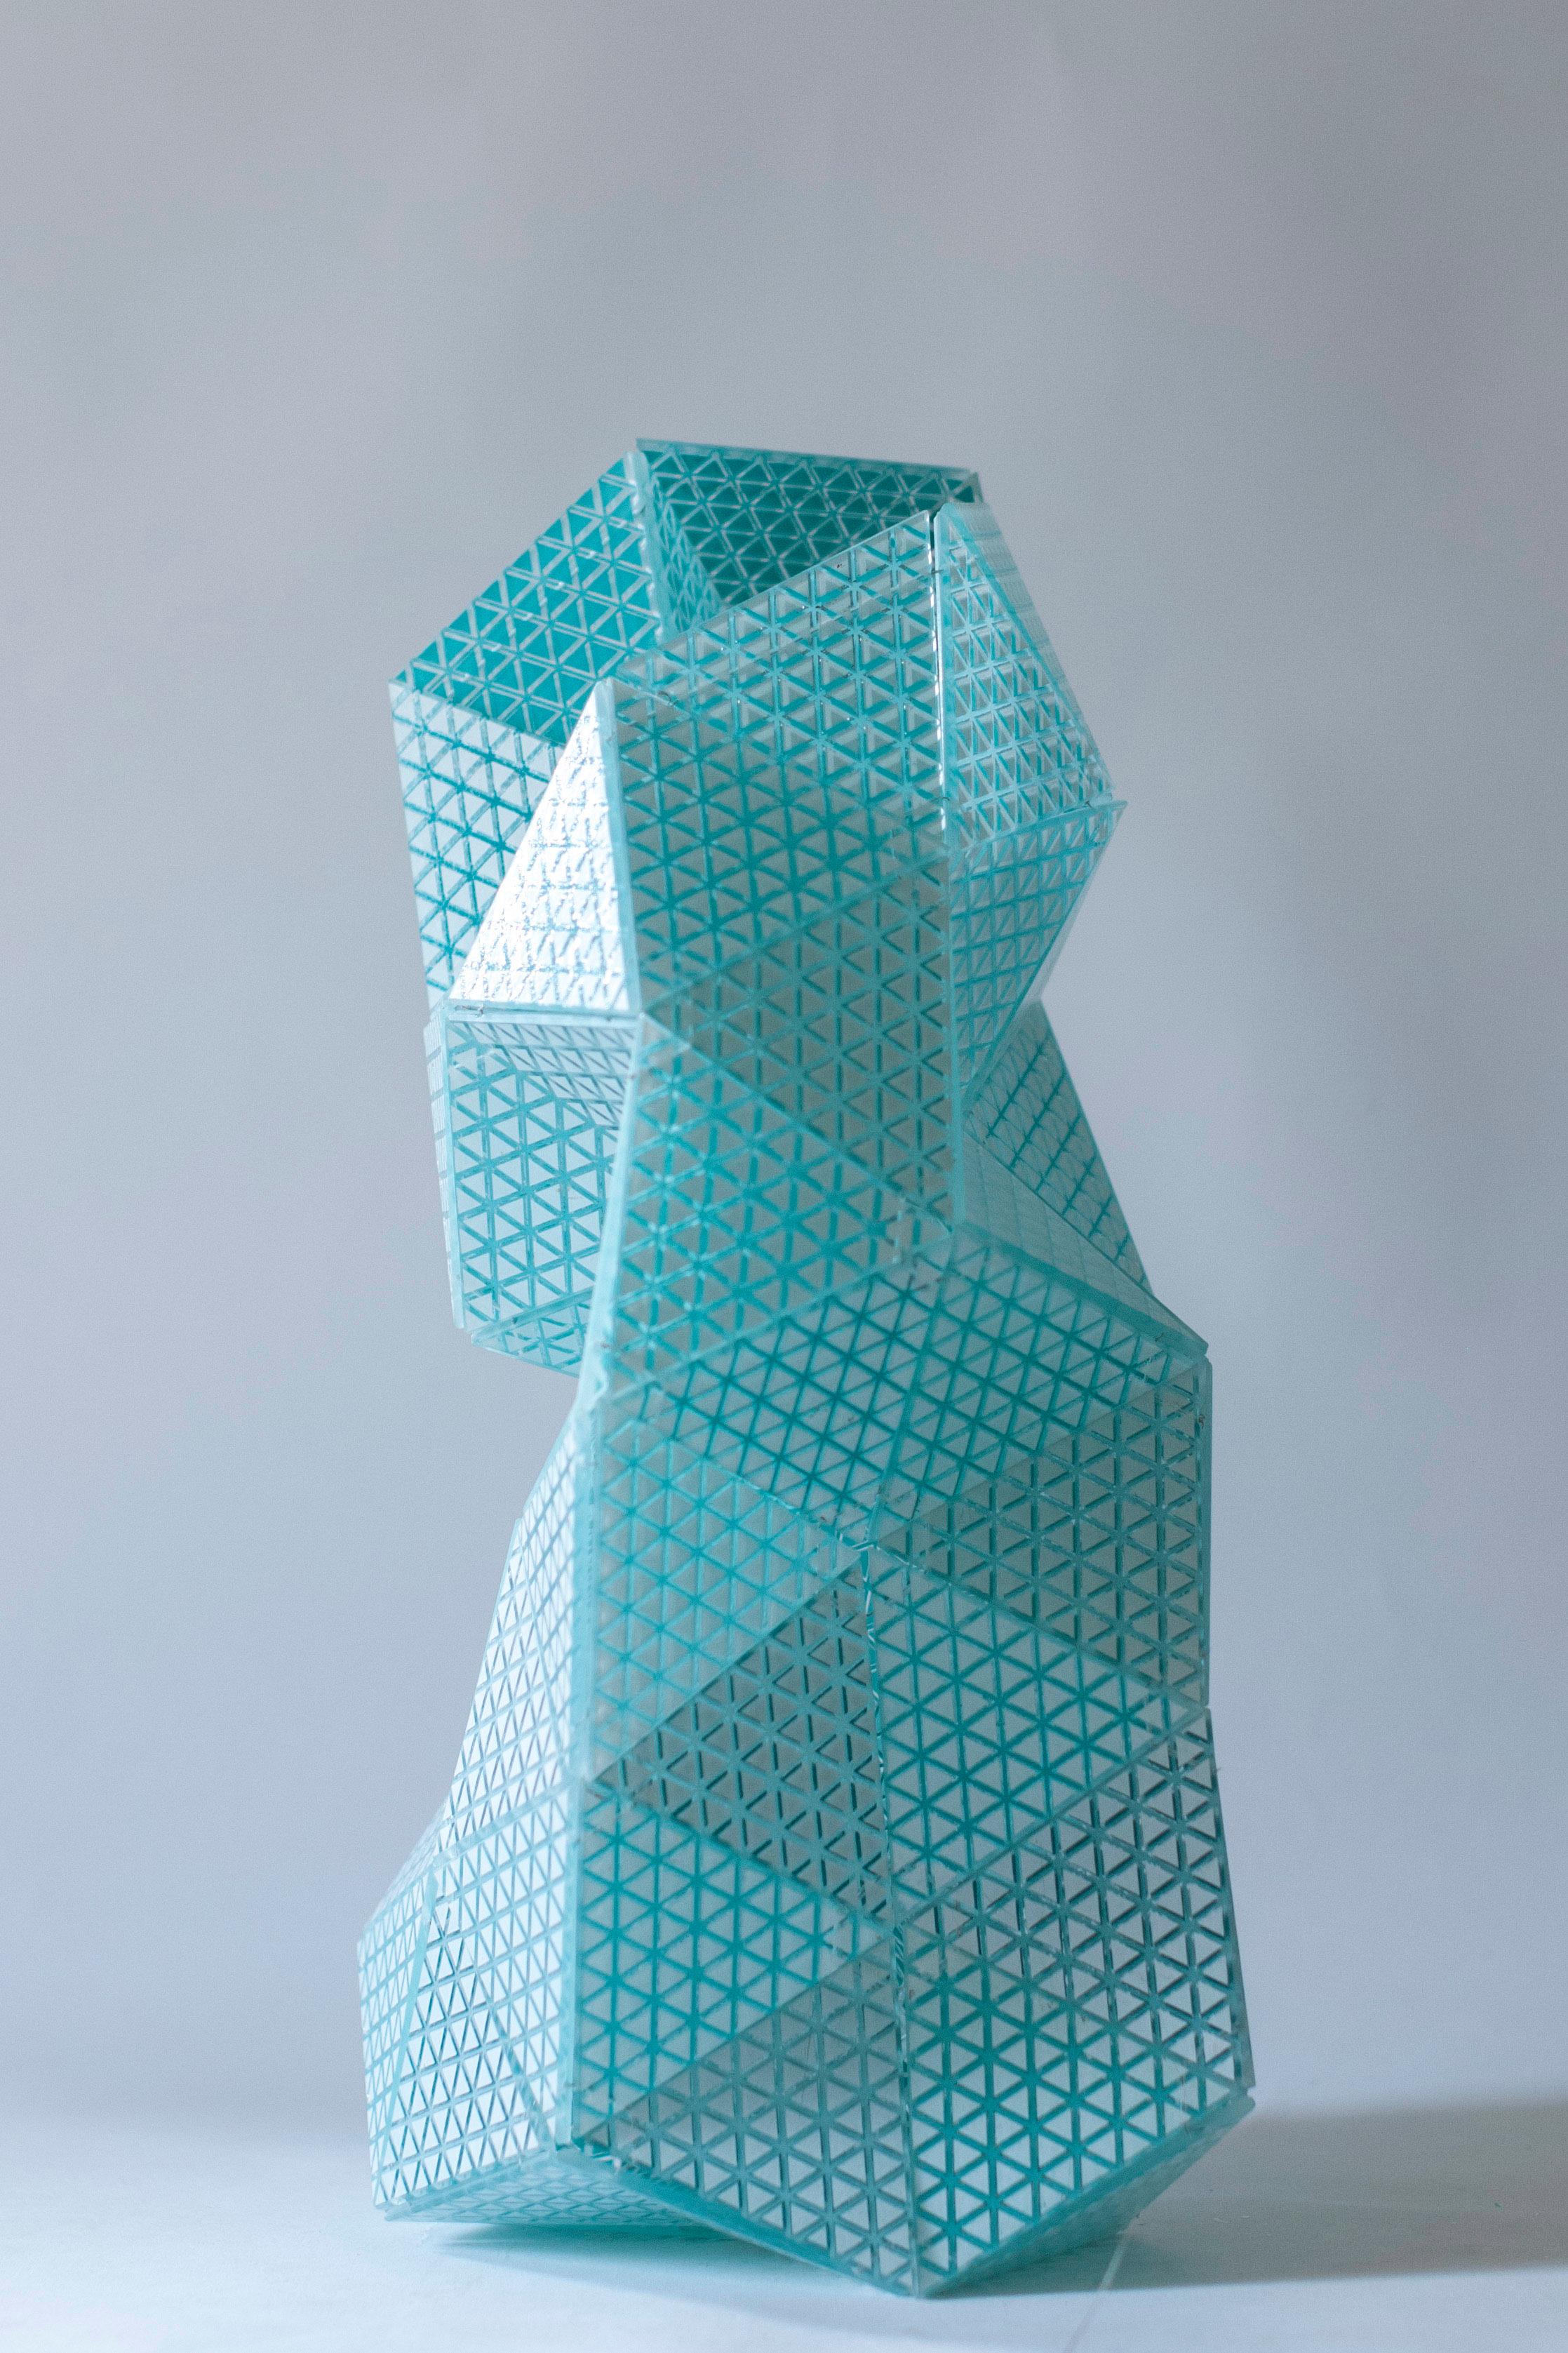 Touch-me 1.0 Vase en verre de Murano par Matteo Silverio
2019
Dimensions : Environ 15 x 30 x 50 cm 
MATERIAL : Verre de Murano

Tous les objets sont 100% faits à la main et personnalisables (couleurs, motifs, taille).
La composition peut être